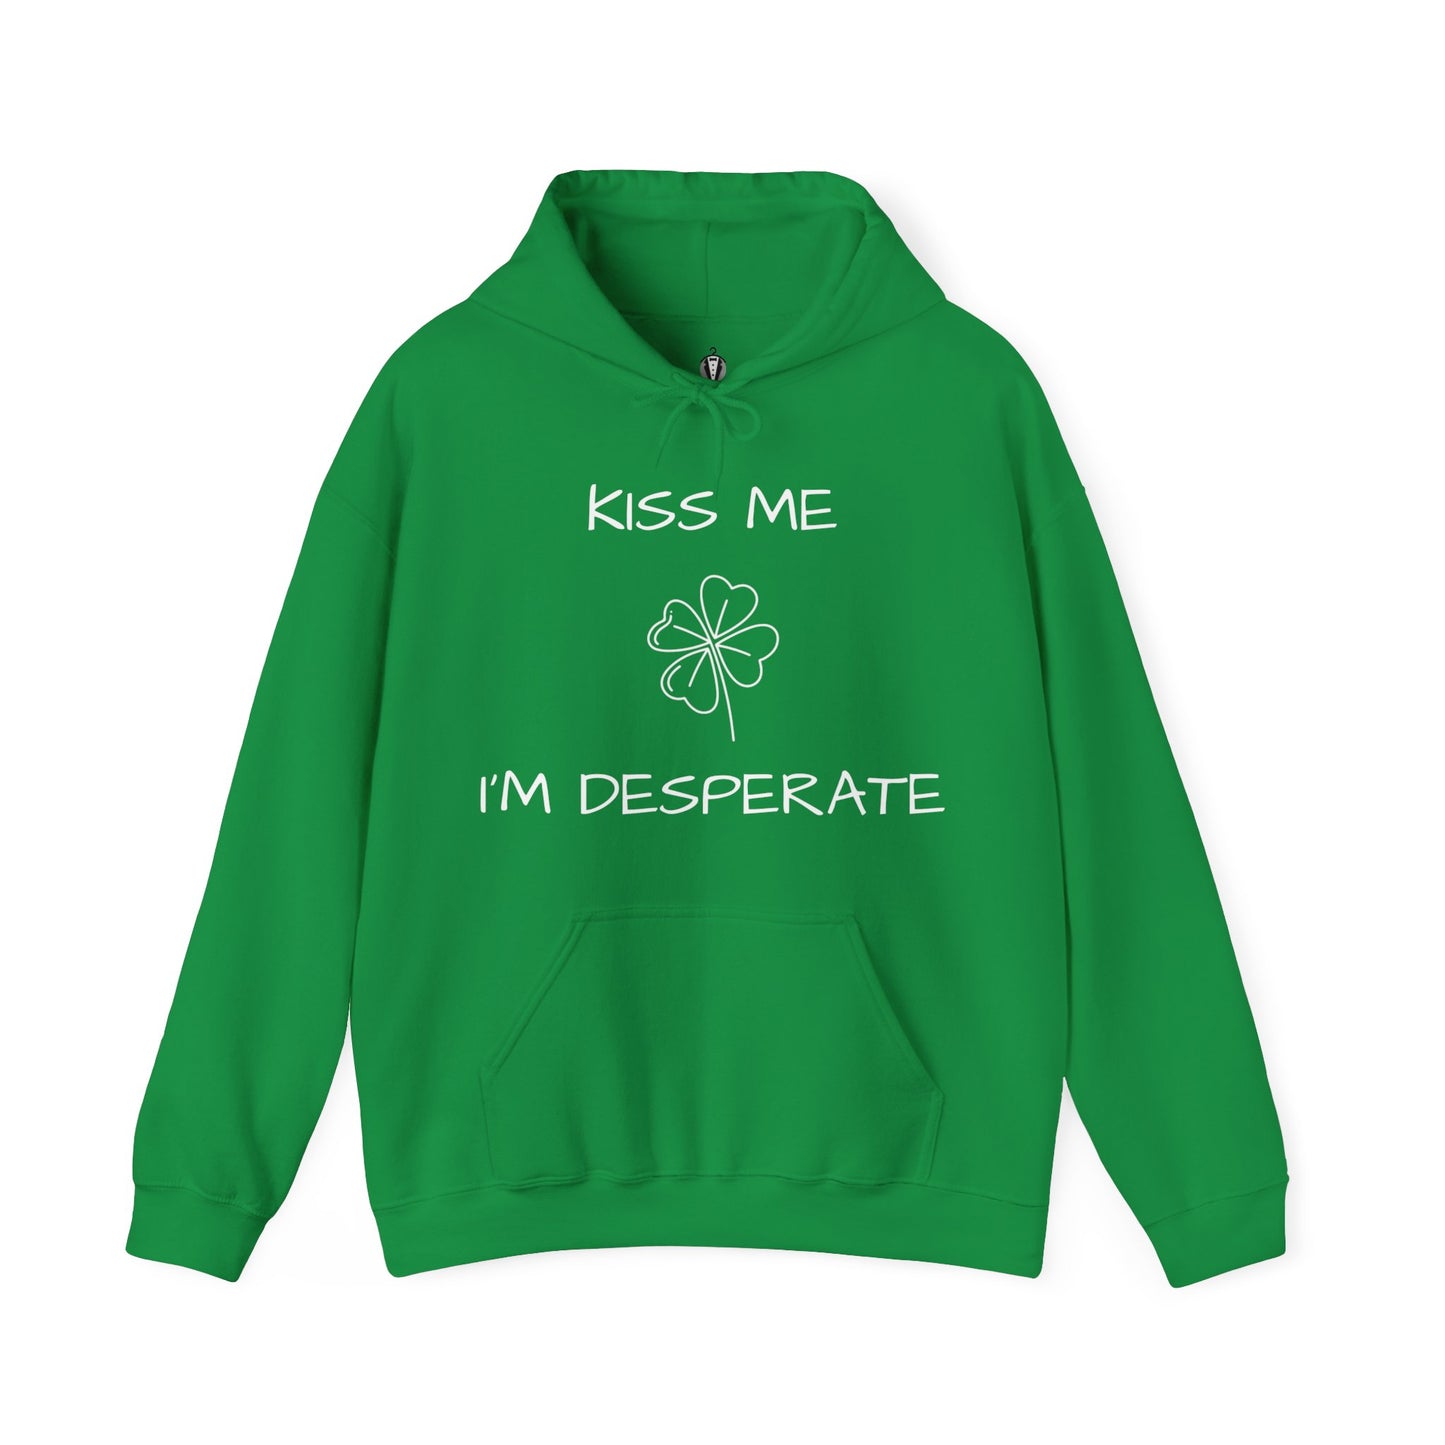 "Kiss me I'm desperate" - Hoodie